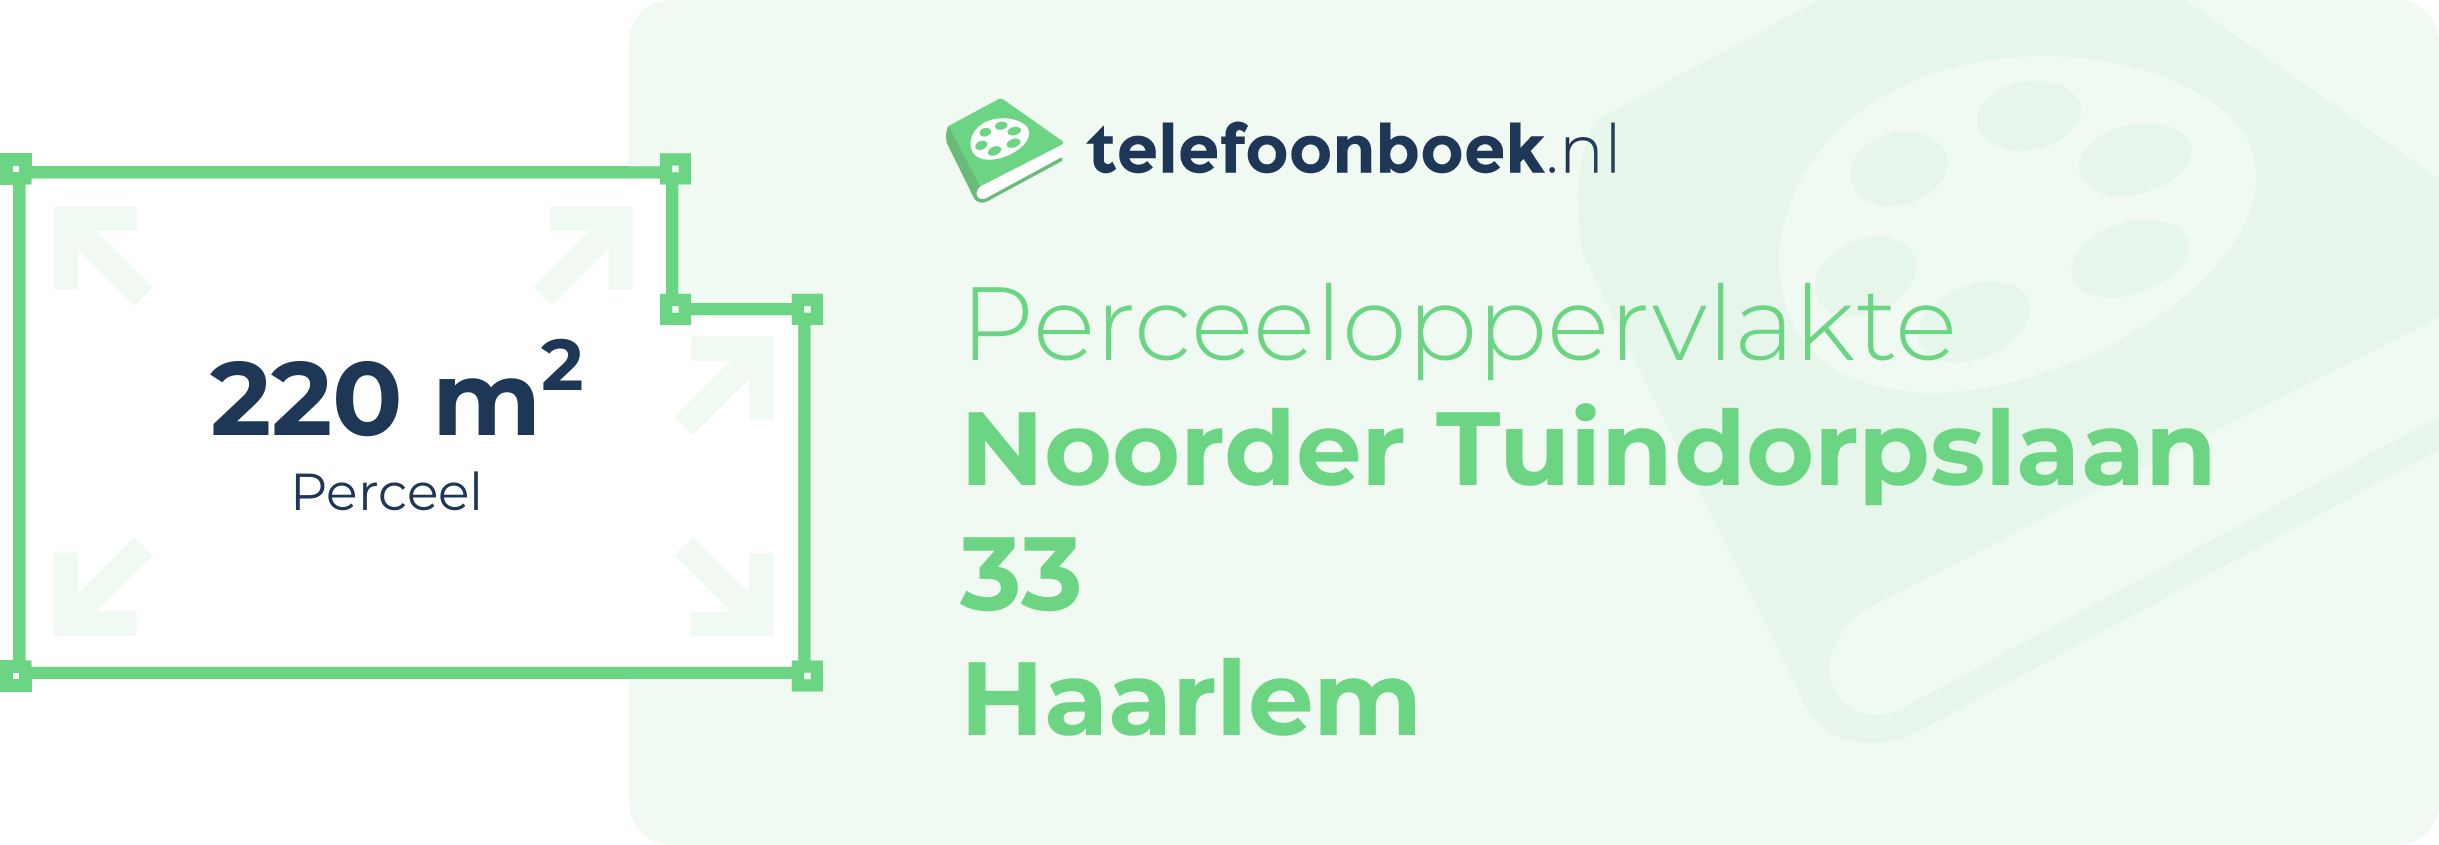 Perceeloppervlakte Noorder Tuindorpslaan 33 Haarlem